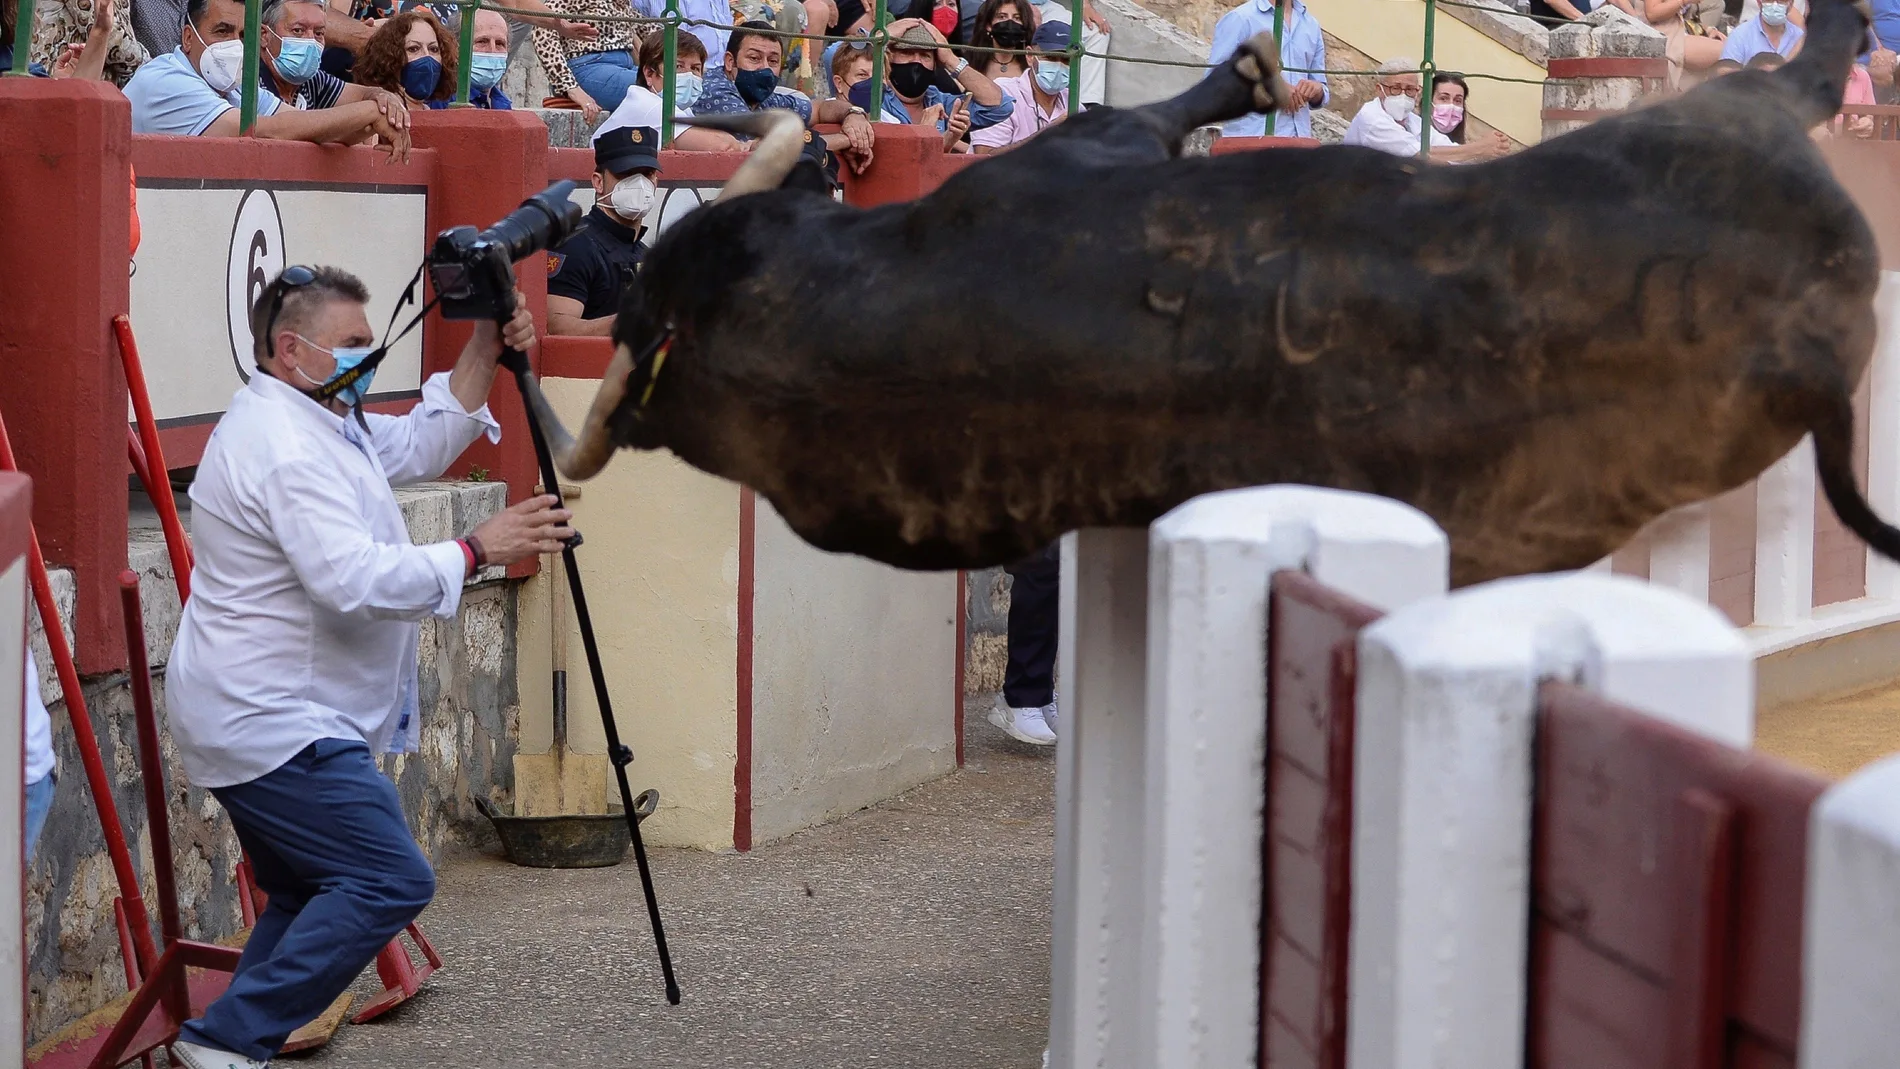 El primer toro de la tarde intenta saltar al callejón en la corrida que tiene lugar en la plaza de Valladolid, en la que comparten cartel Morante, Manzanares y Pablo Aguado